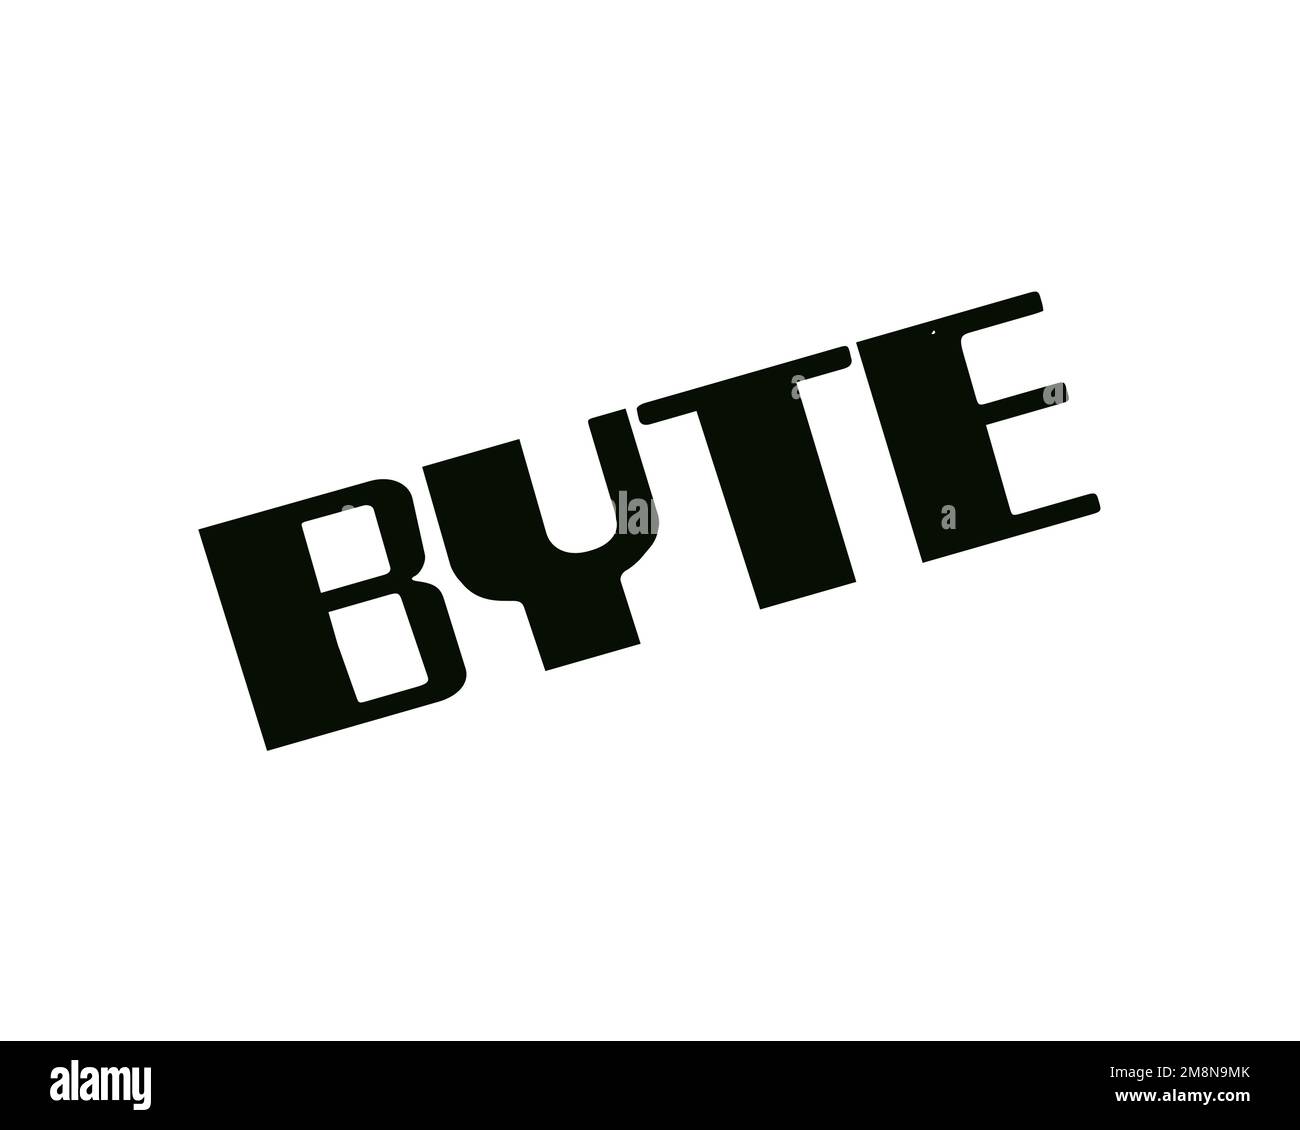 Byte magazine, rotated logo, white background Stock Photo